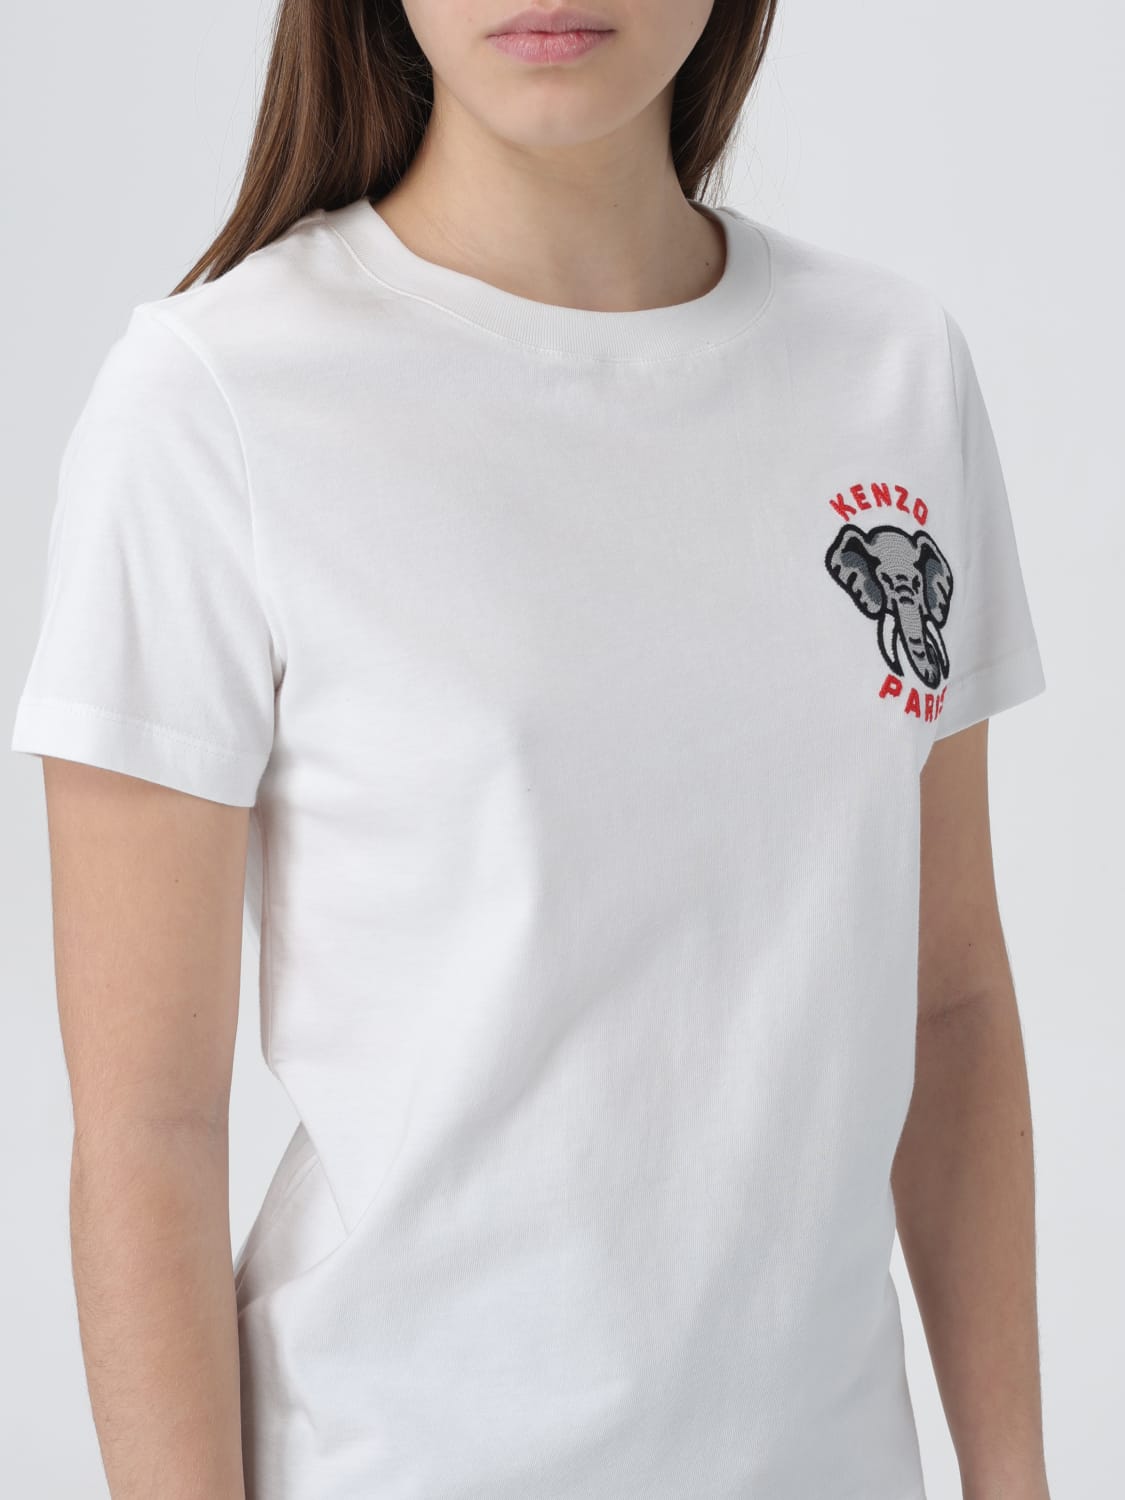 KENZO, White Women's T-shirt